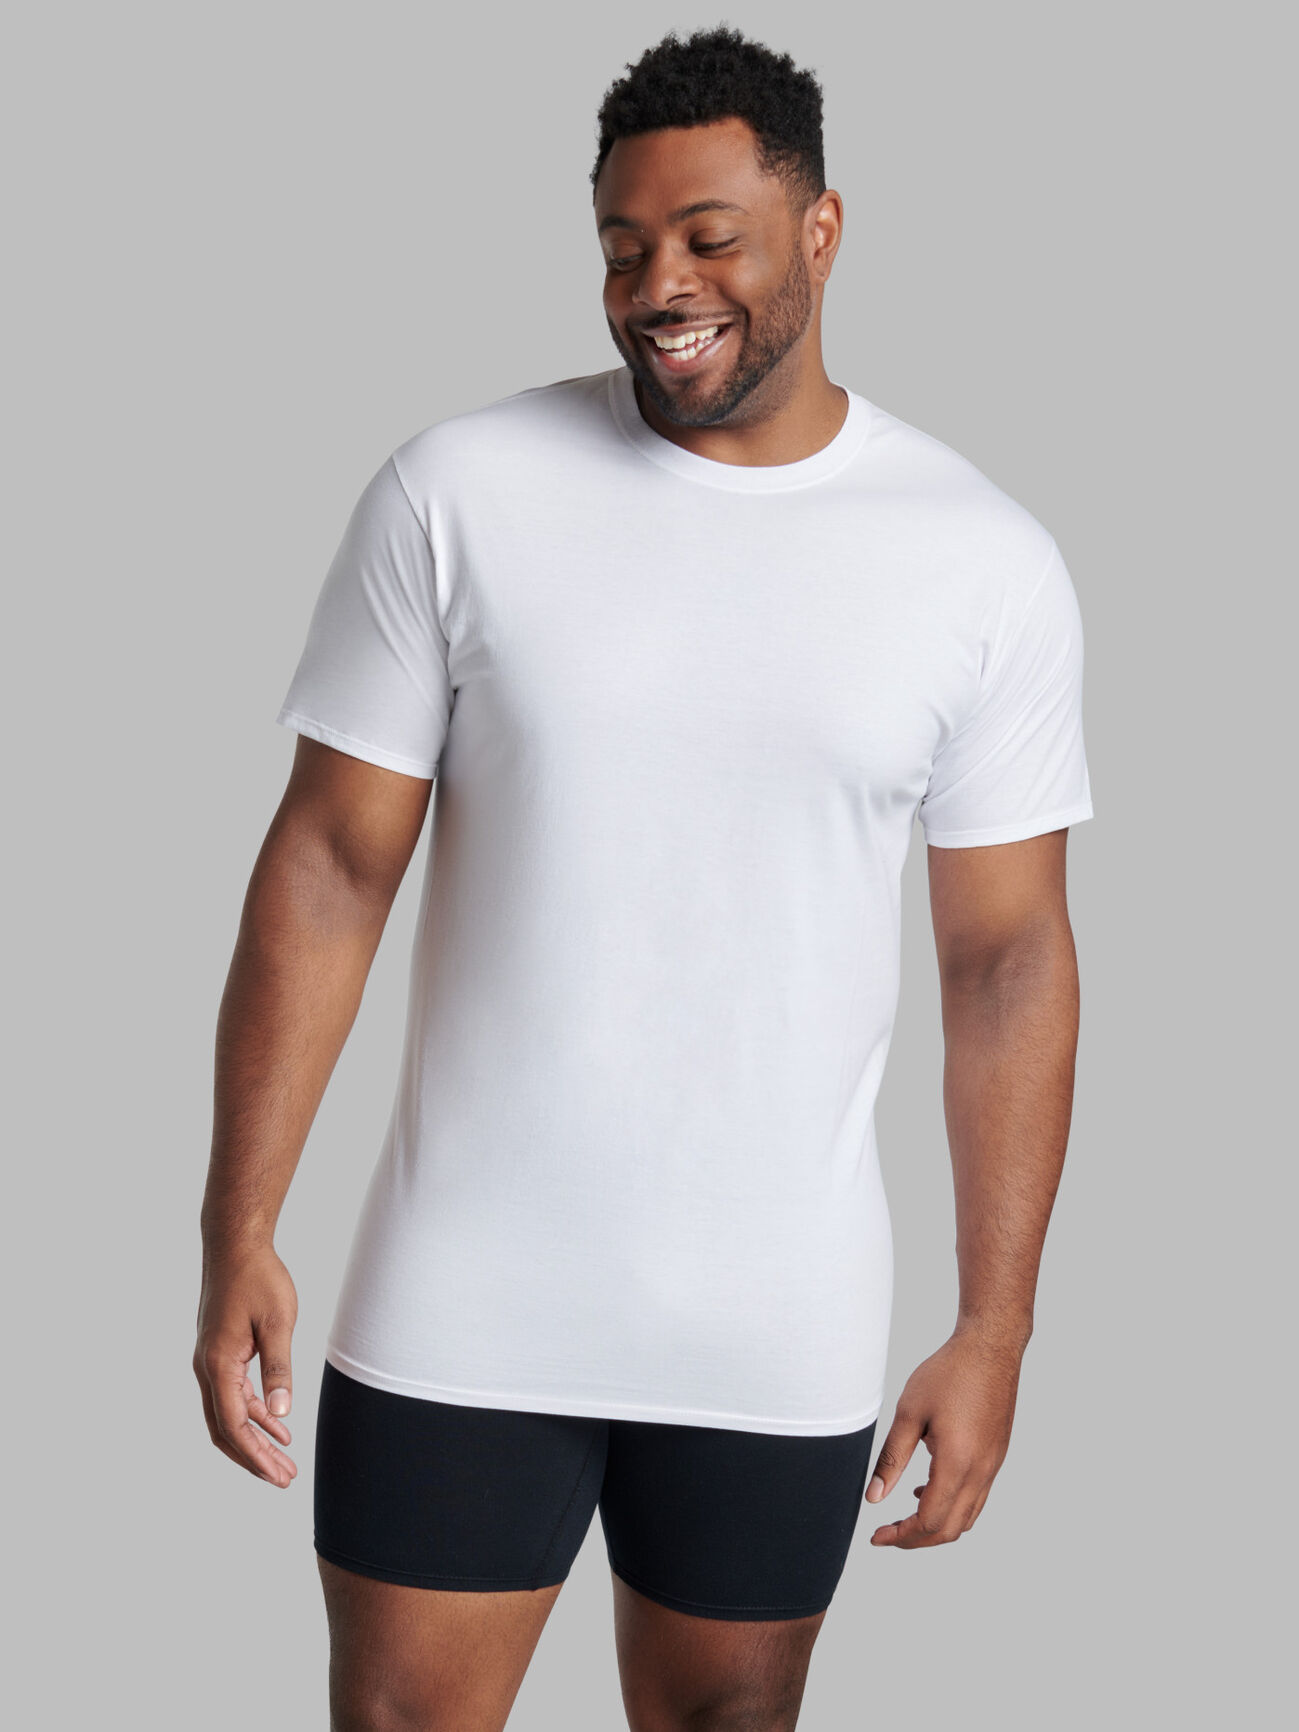 Trending long tee t shirt for men